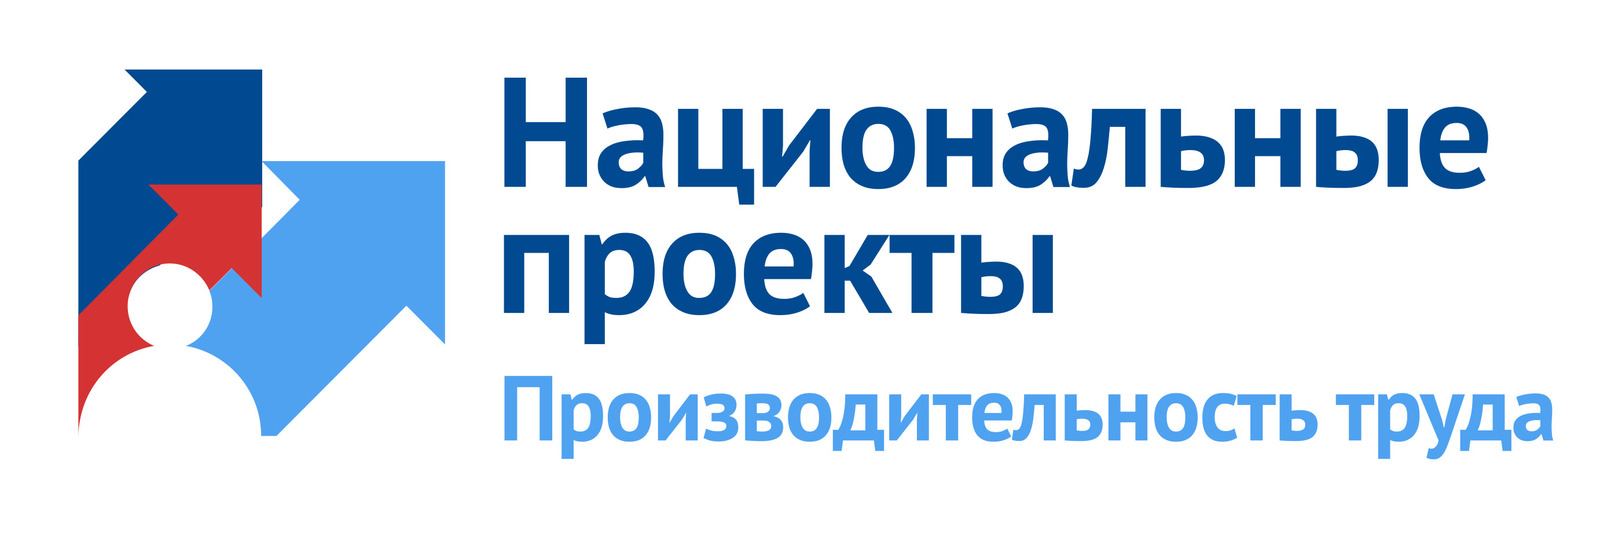 Производители Башкортостана пройдут обучение по программе «Акселератор экспортного роста»